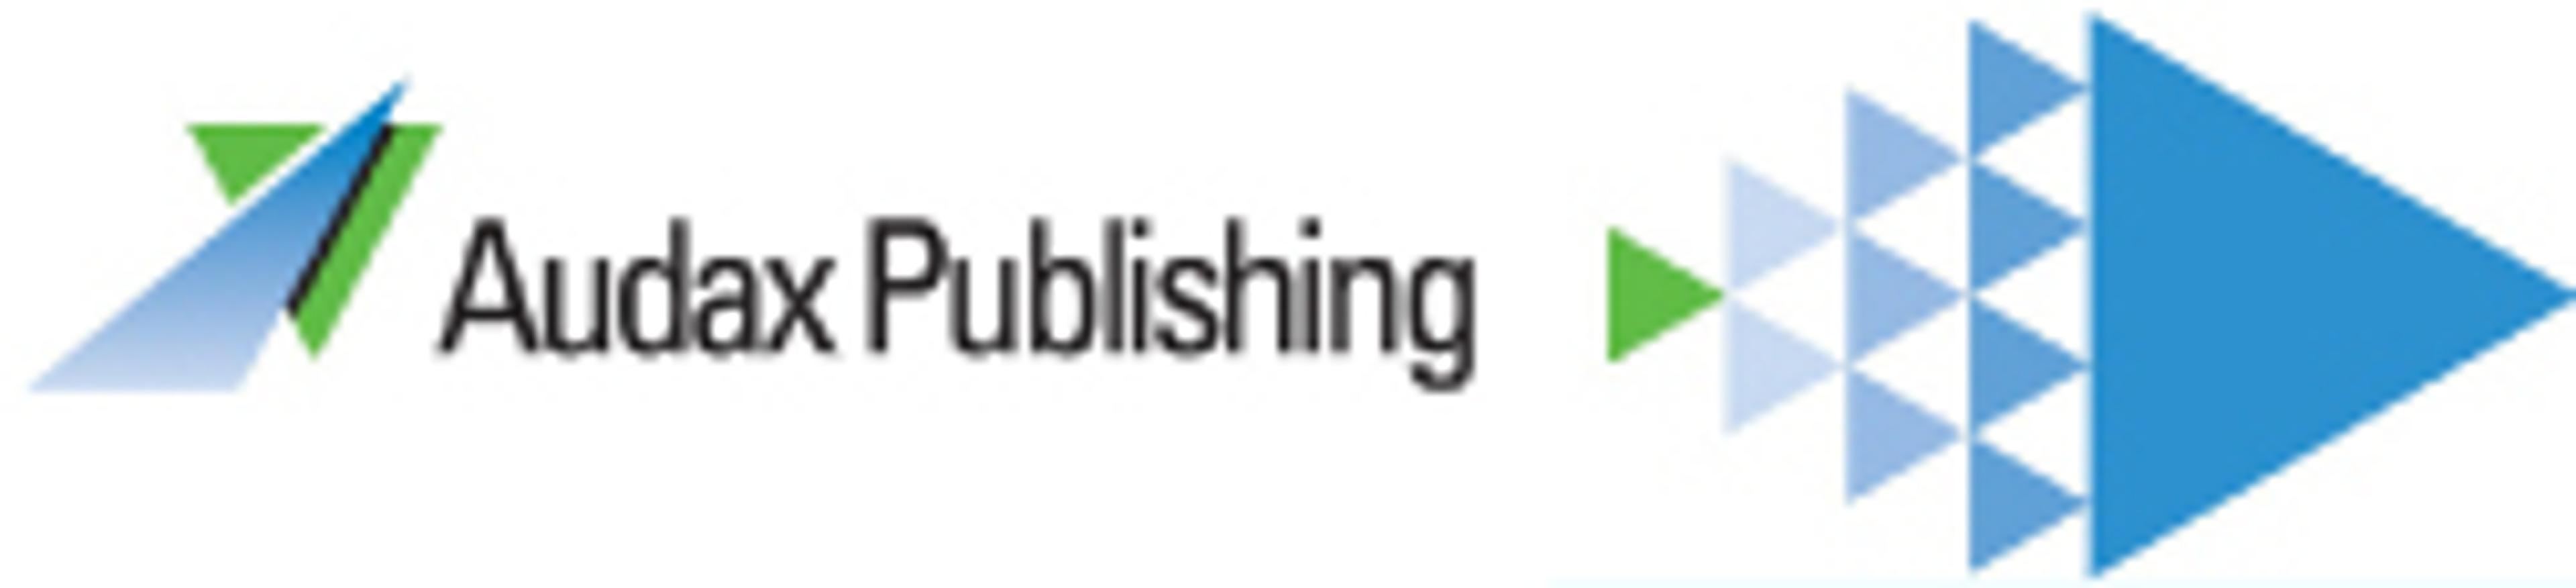 Audax Publishing biedt multichannel advertising door samenwerking met Just Media Group